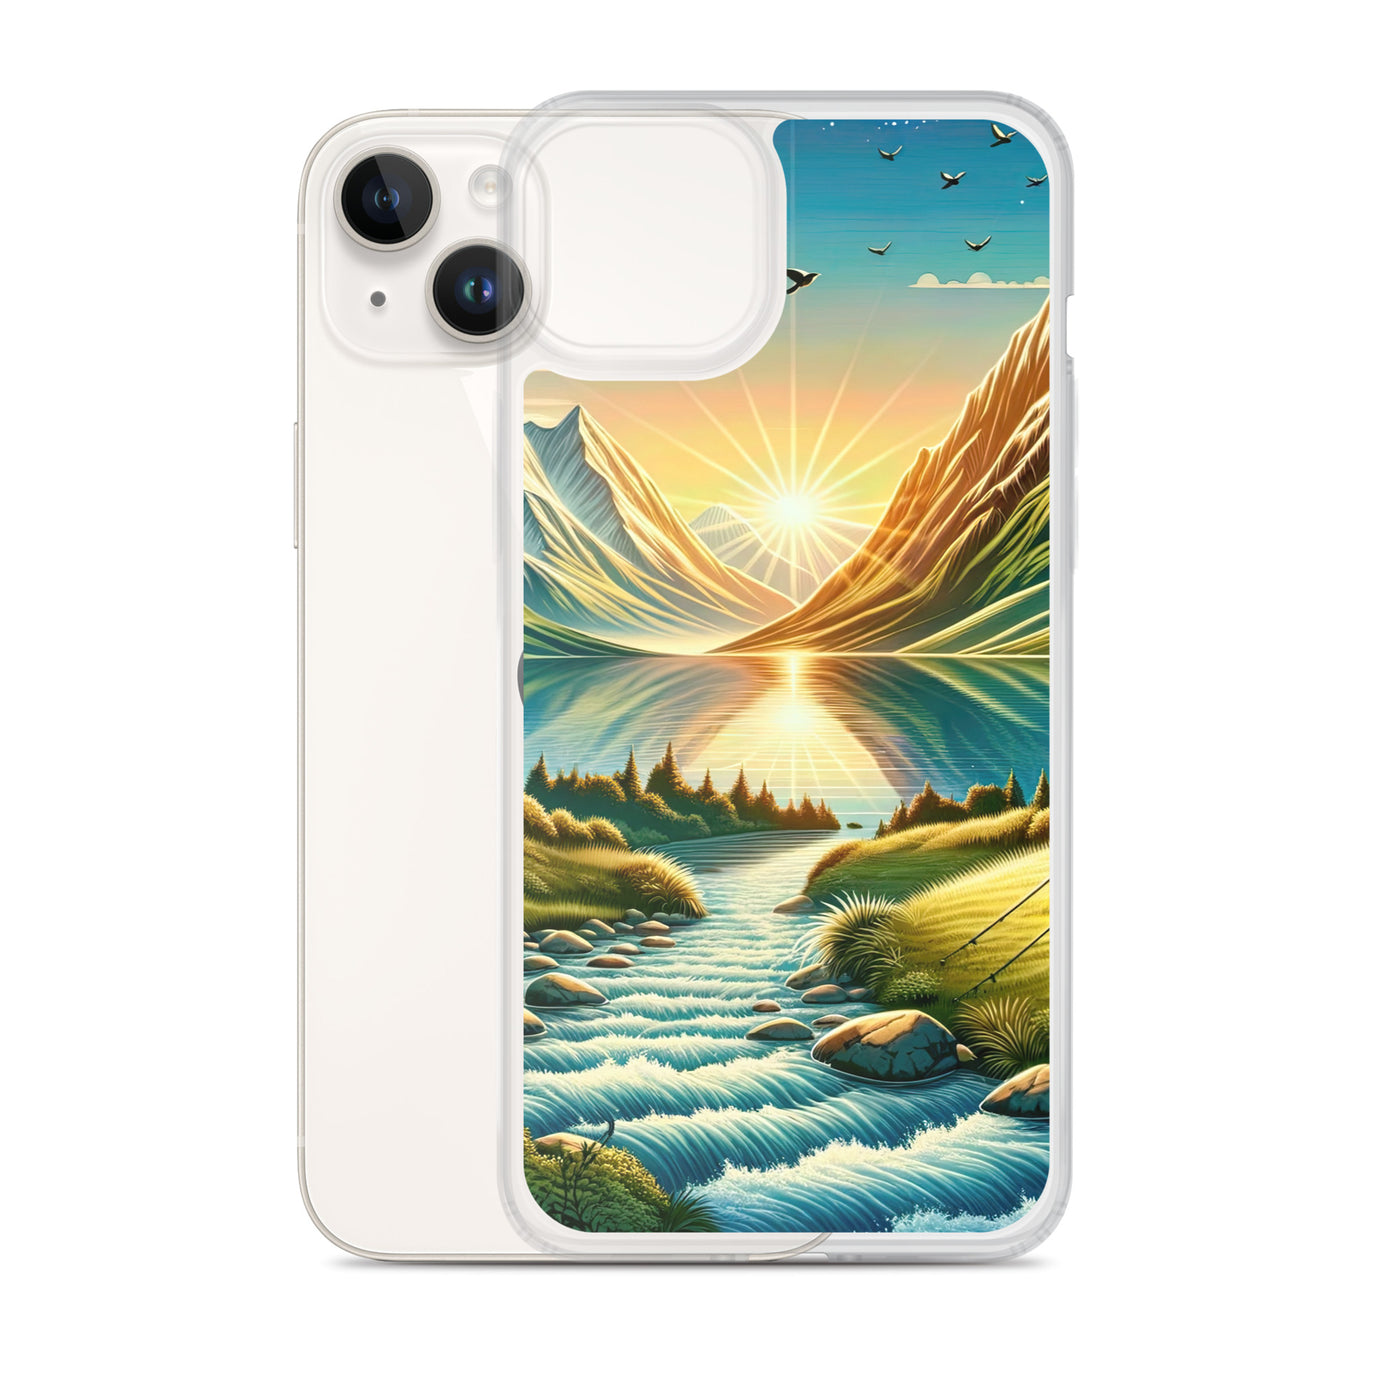 Zelt im Alpenmorgen mit goldenem Licht, Schneebergen und unberührten Seen - iPhone Schutzhülle (durchsichtig) berge xxx yyy zzz